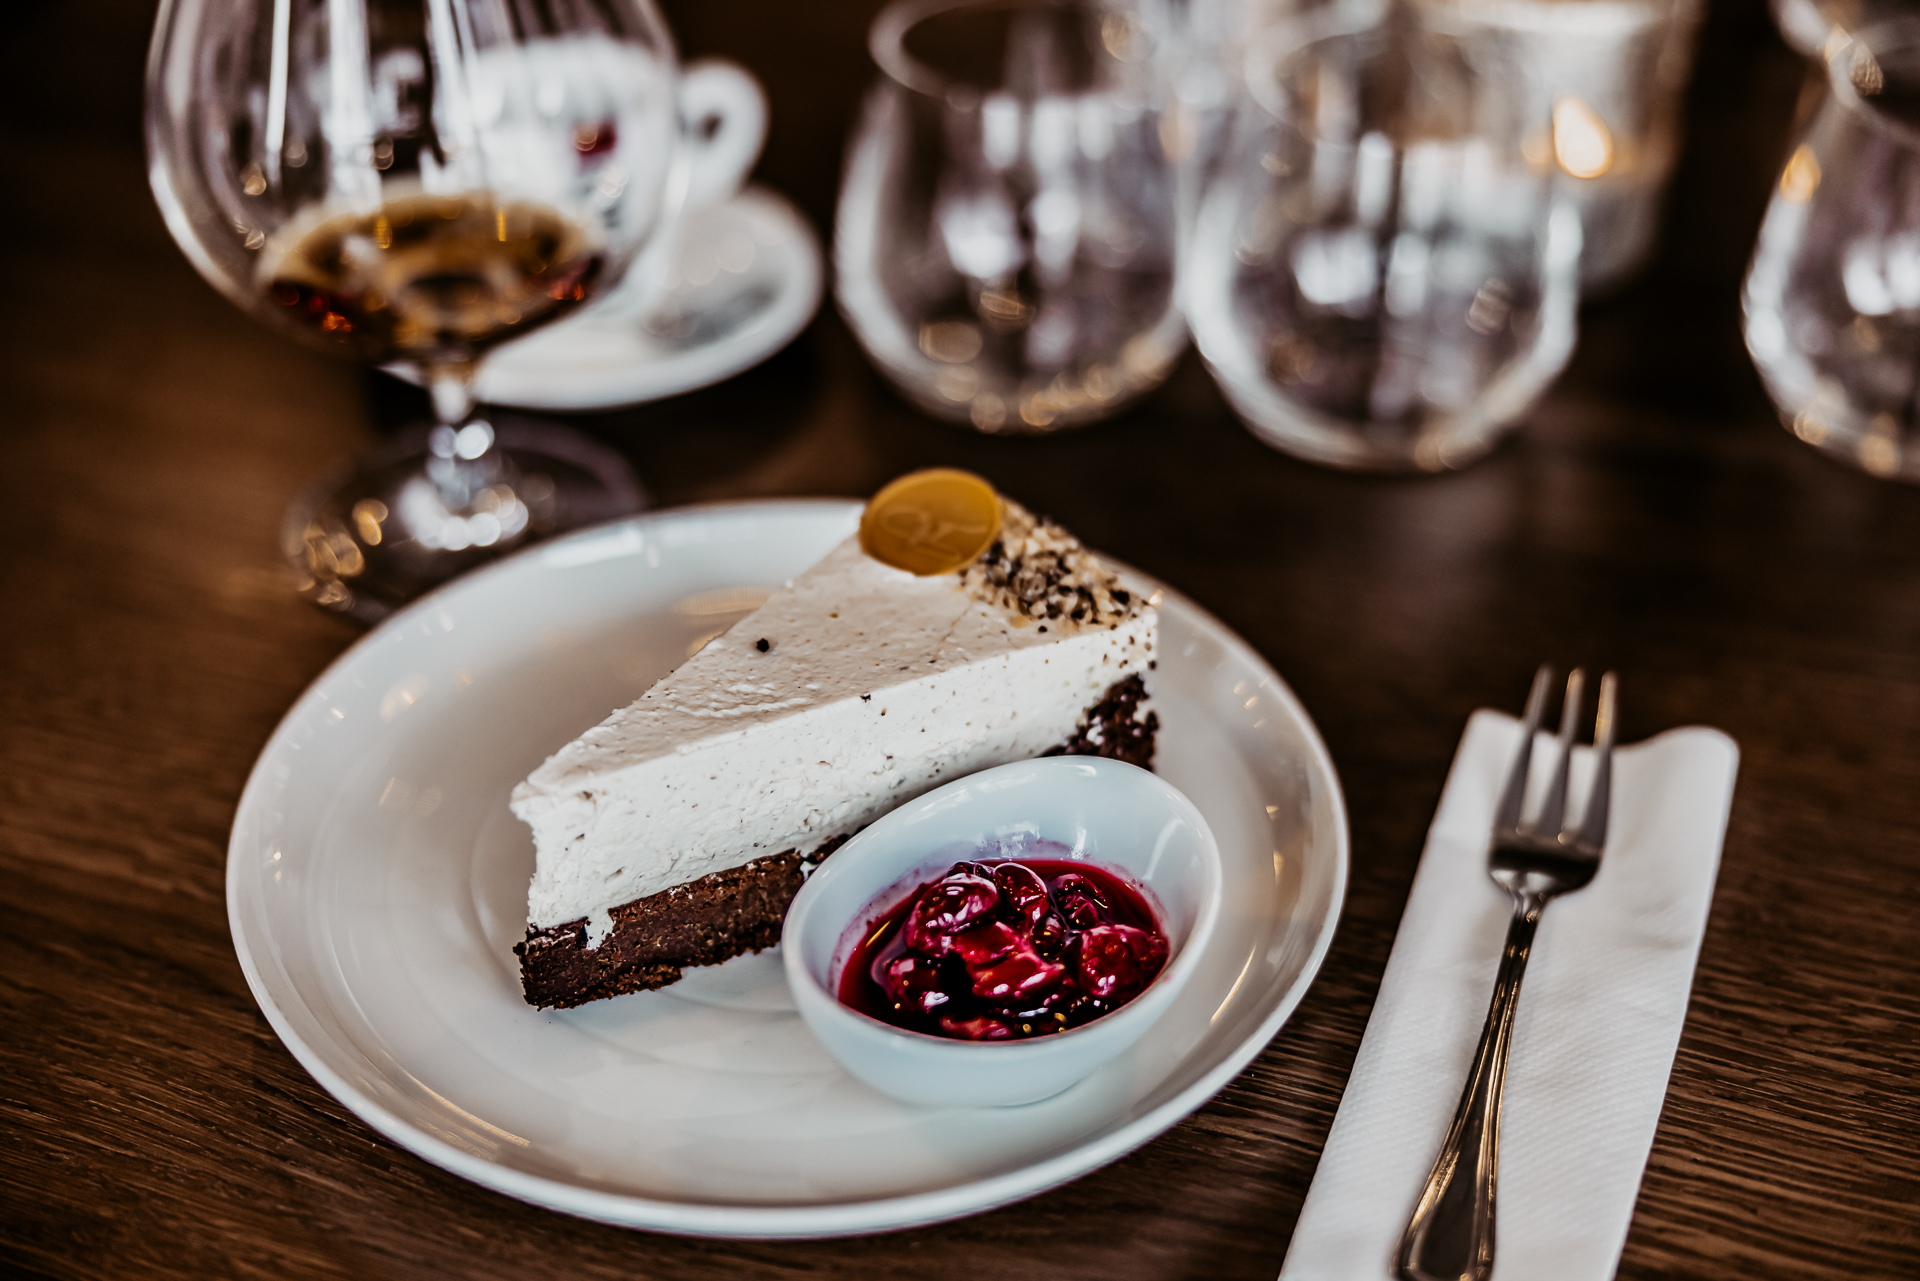 fantastická gaštanovo čokoládová torta s višňami naloženými v rume na bielom porcelánovom tanieri, na drevenom stole tiež dezertná vidlička a koňak